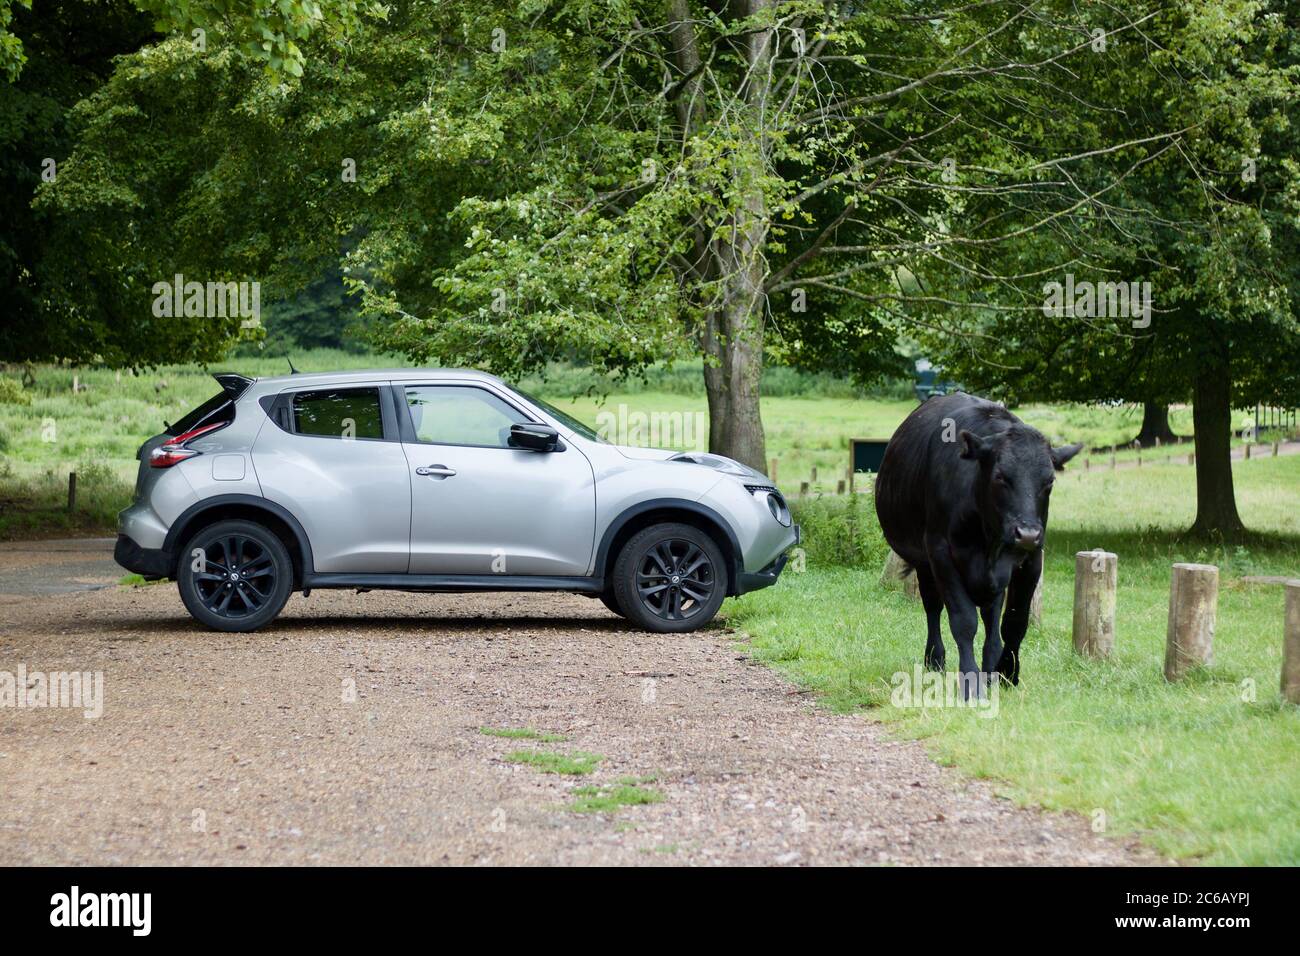 4 luglio 2020 - Inghilterra, Regno Unito: Mucca nera a piedi accanto a auto d'argento parcheggiata in paese Foto Stock